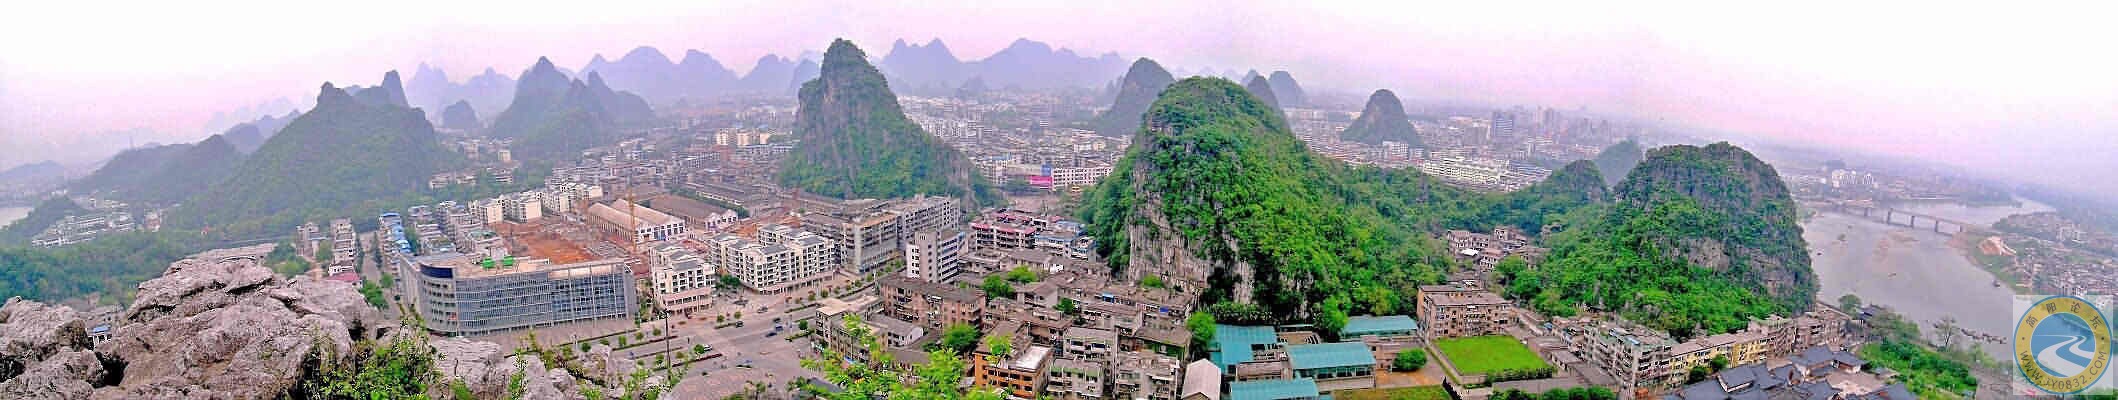 桂林市区全景照片